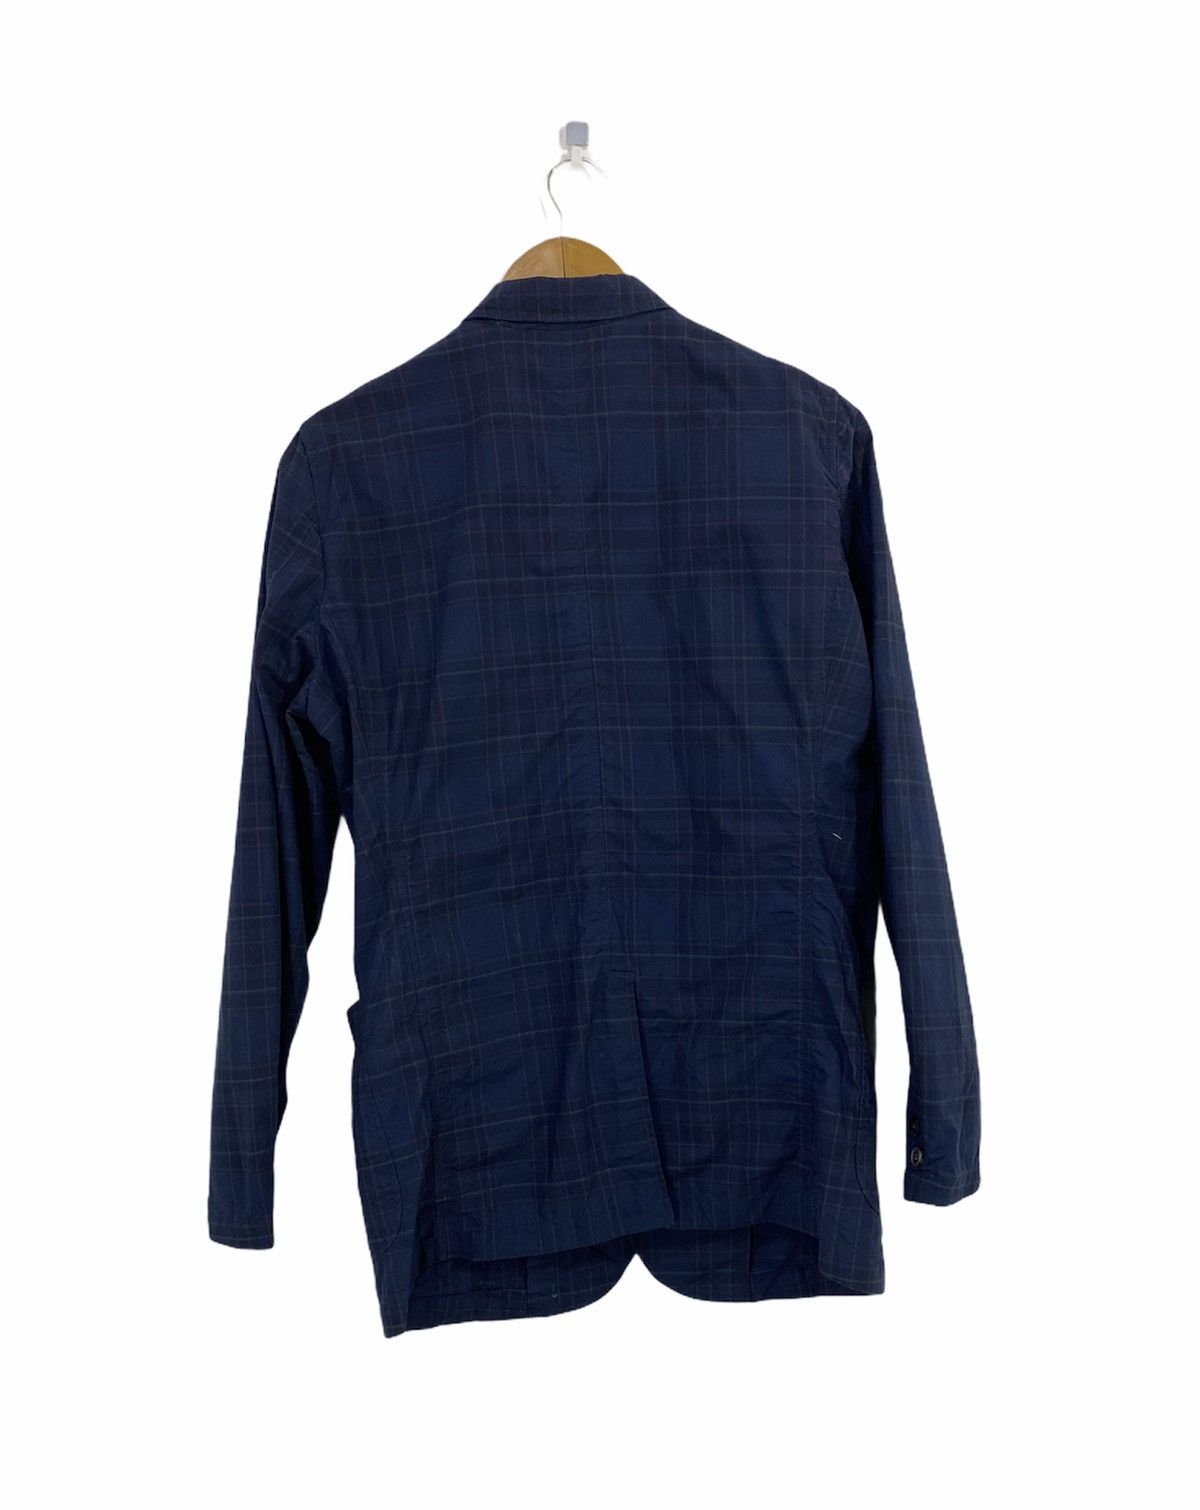 Beams+ Tartan Jacket Original Fabric Nice Design - 2